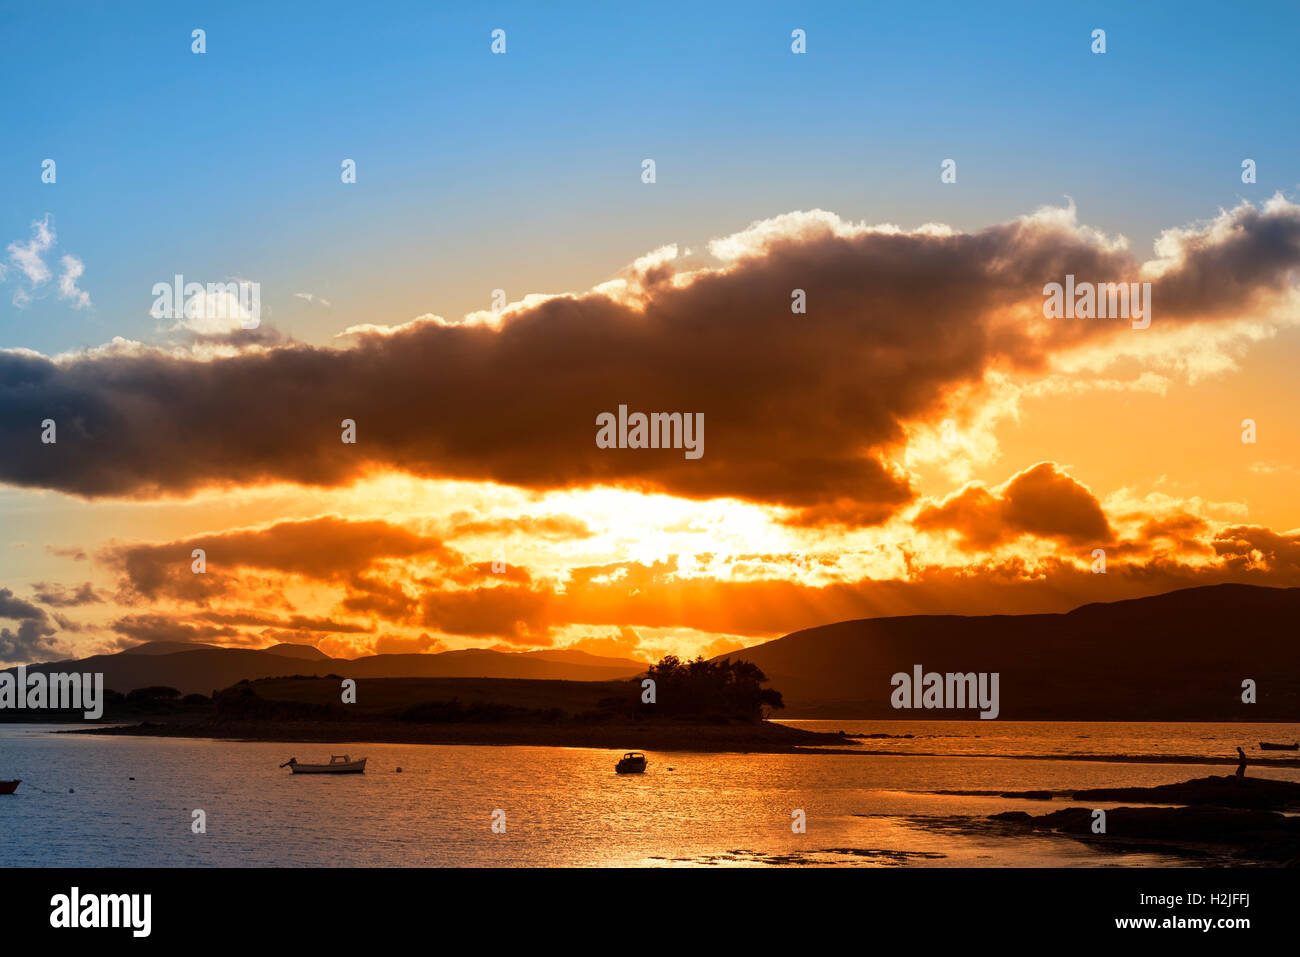 Bateaux dans une baie tranquille avec Island près de Kenmare, sur la manière dont l'Irlande sauvage de l'Atlantique avec un coucher de soleil rouge Banque D'Images